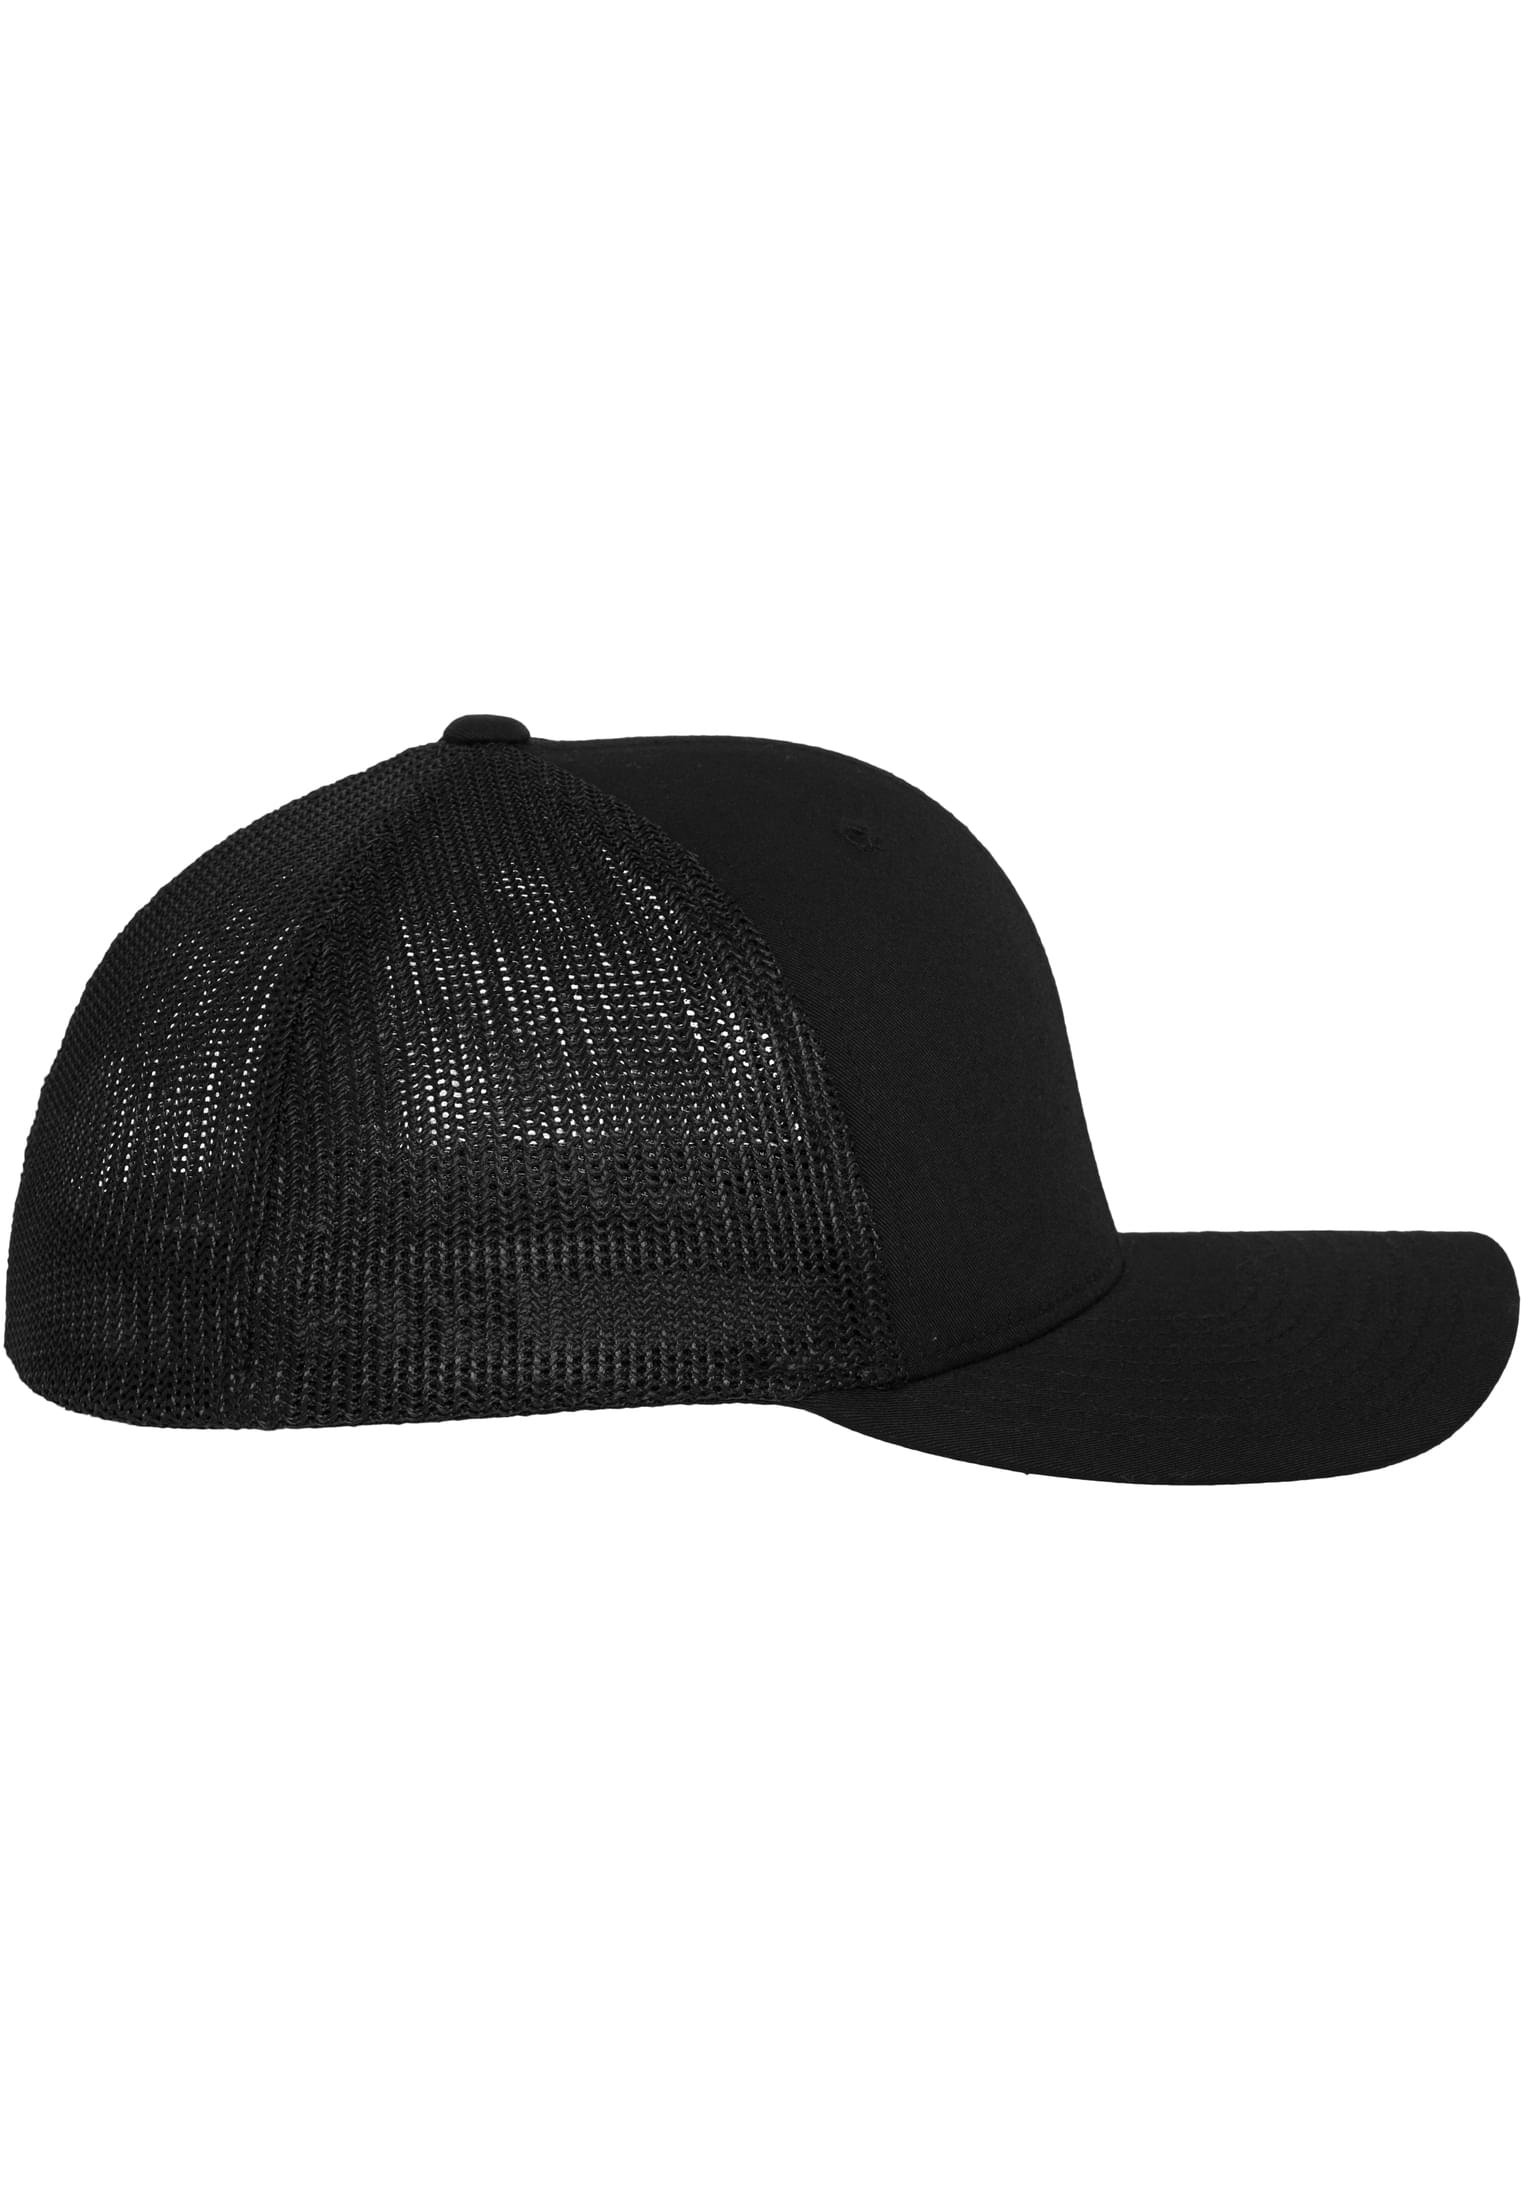  Mesh Cotton Twill Trucker Cap in Farbe black